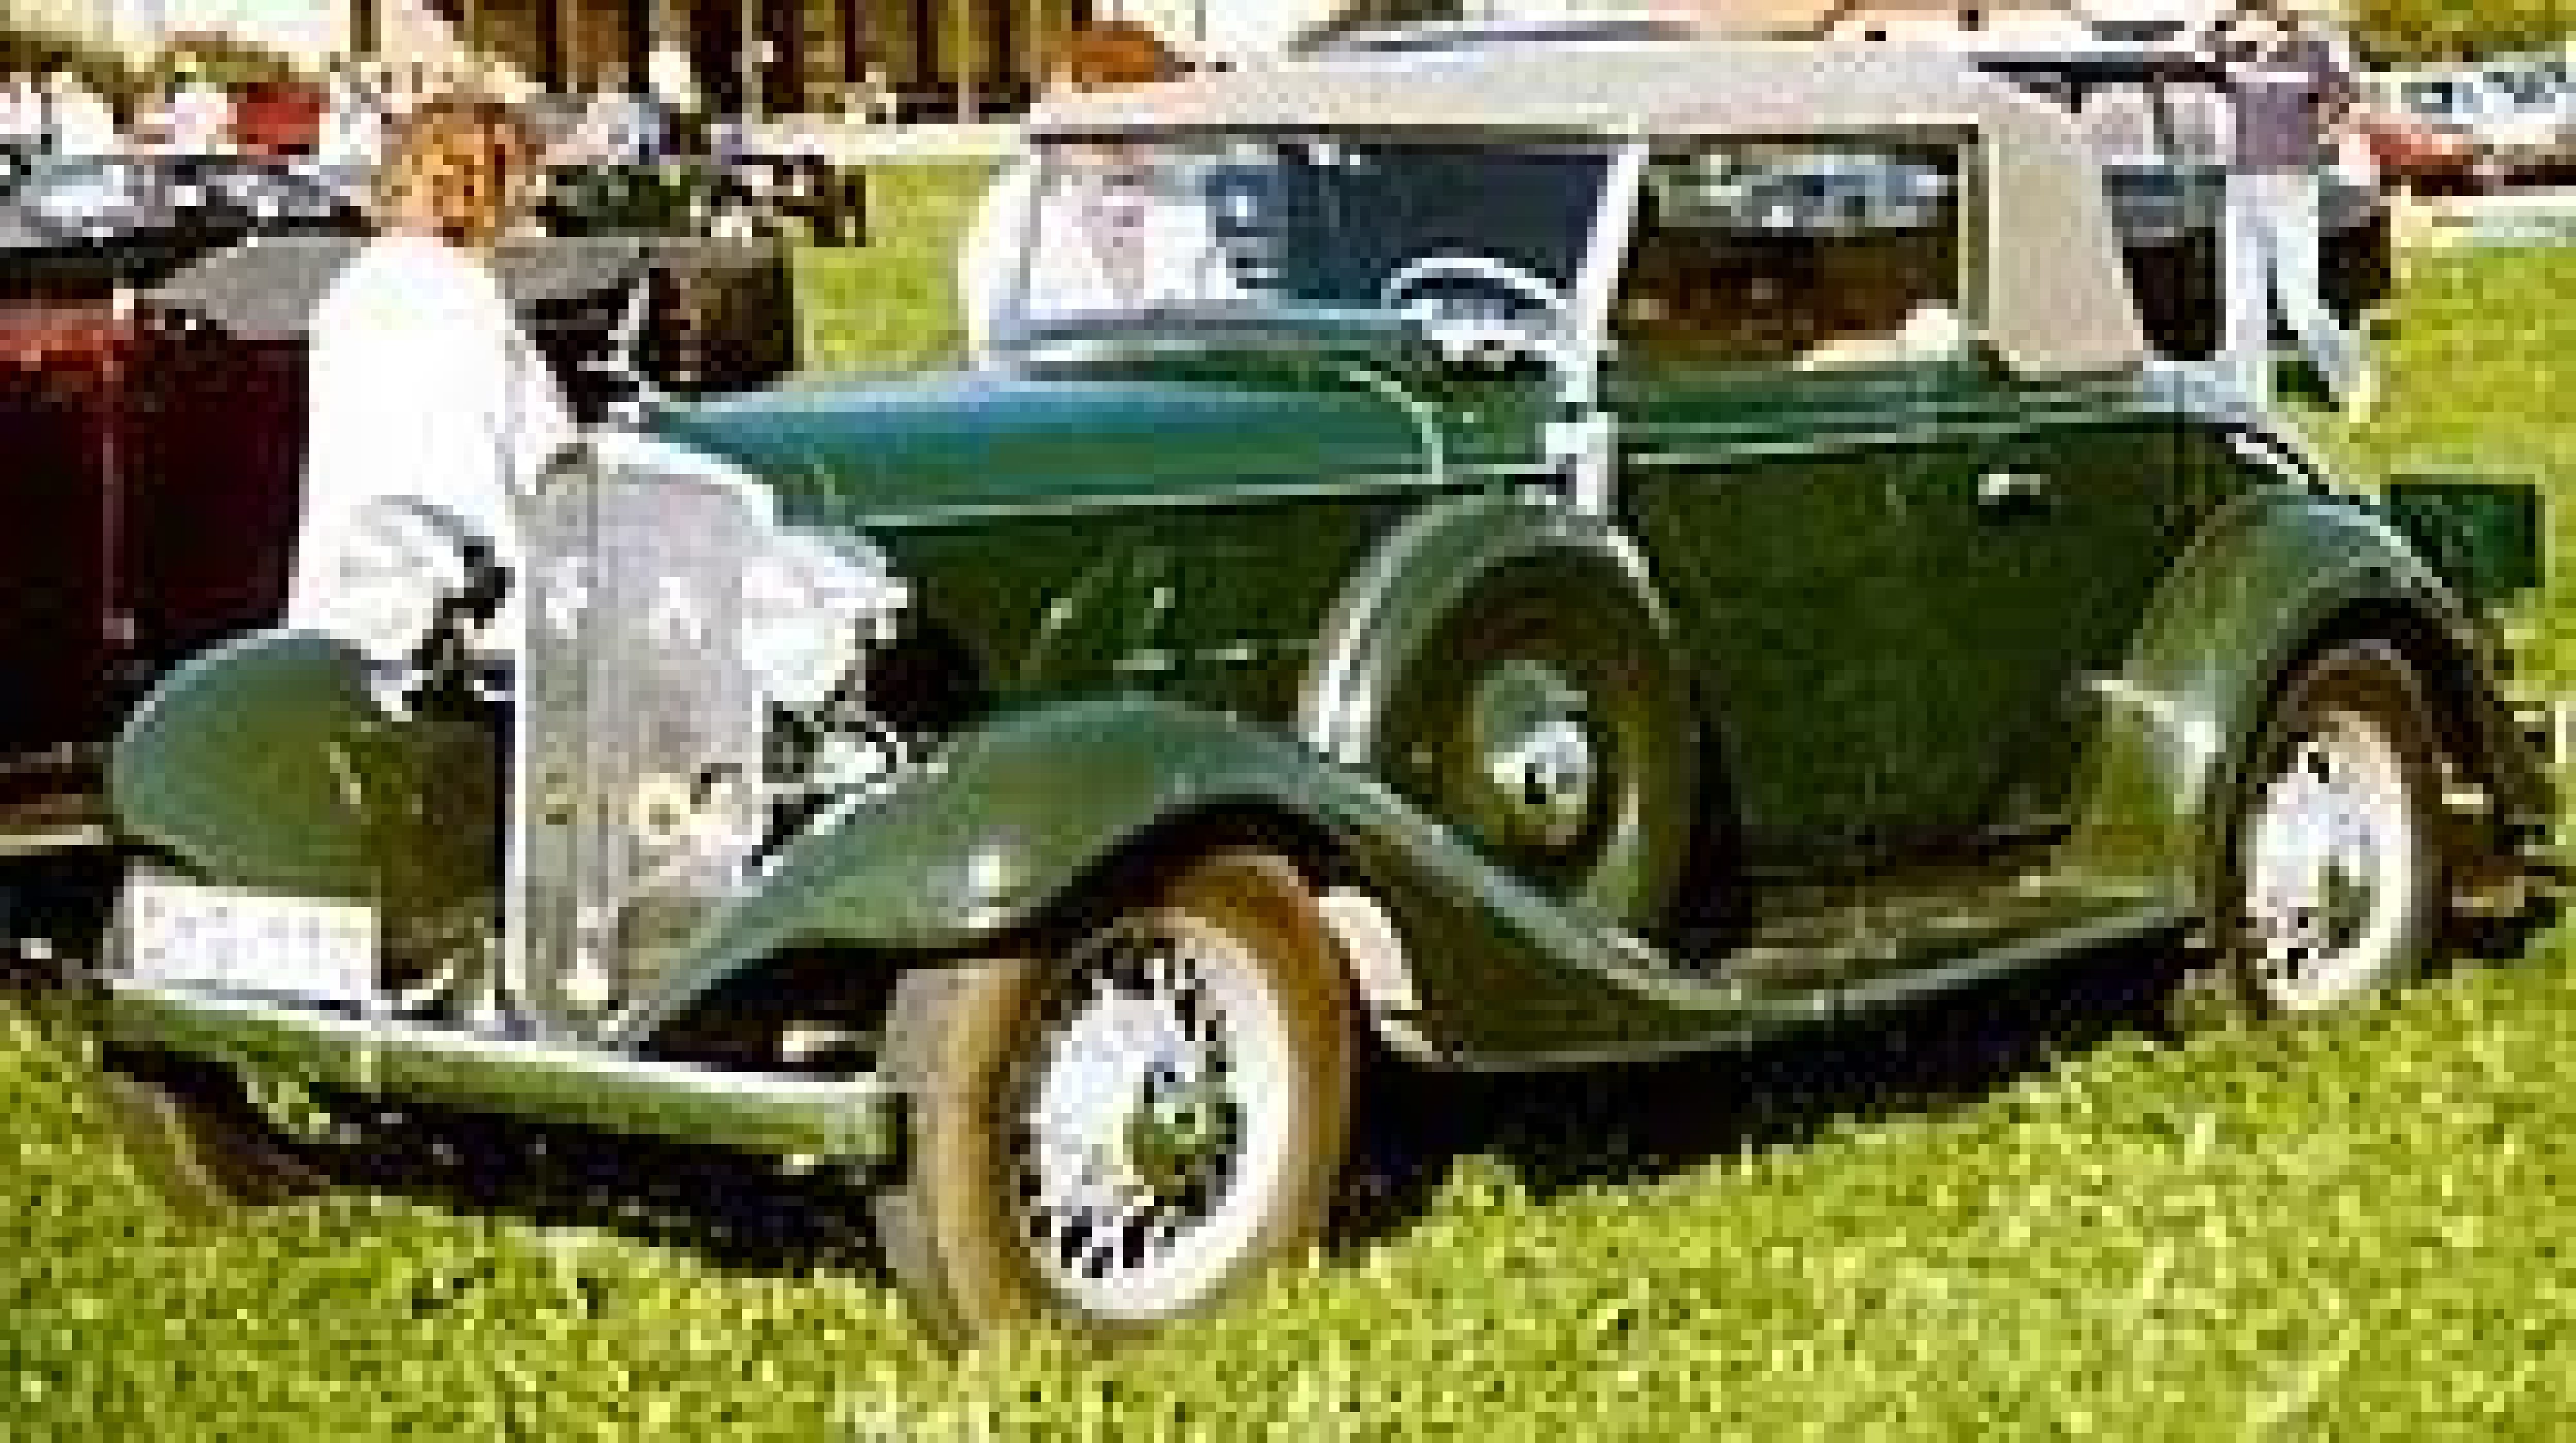 1933 Cabriolet